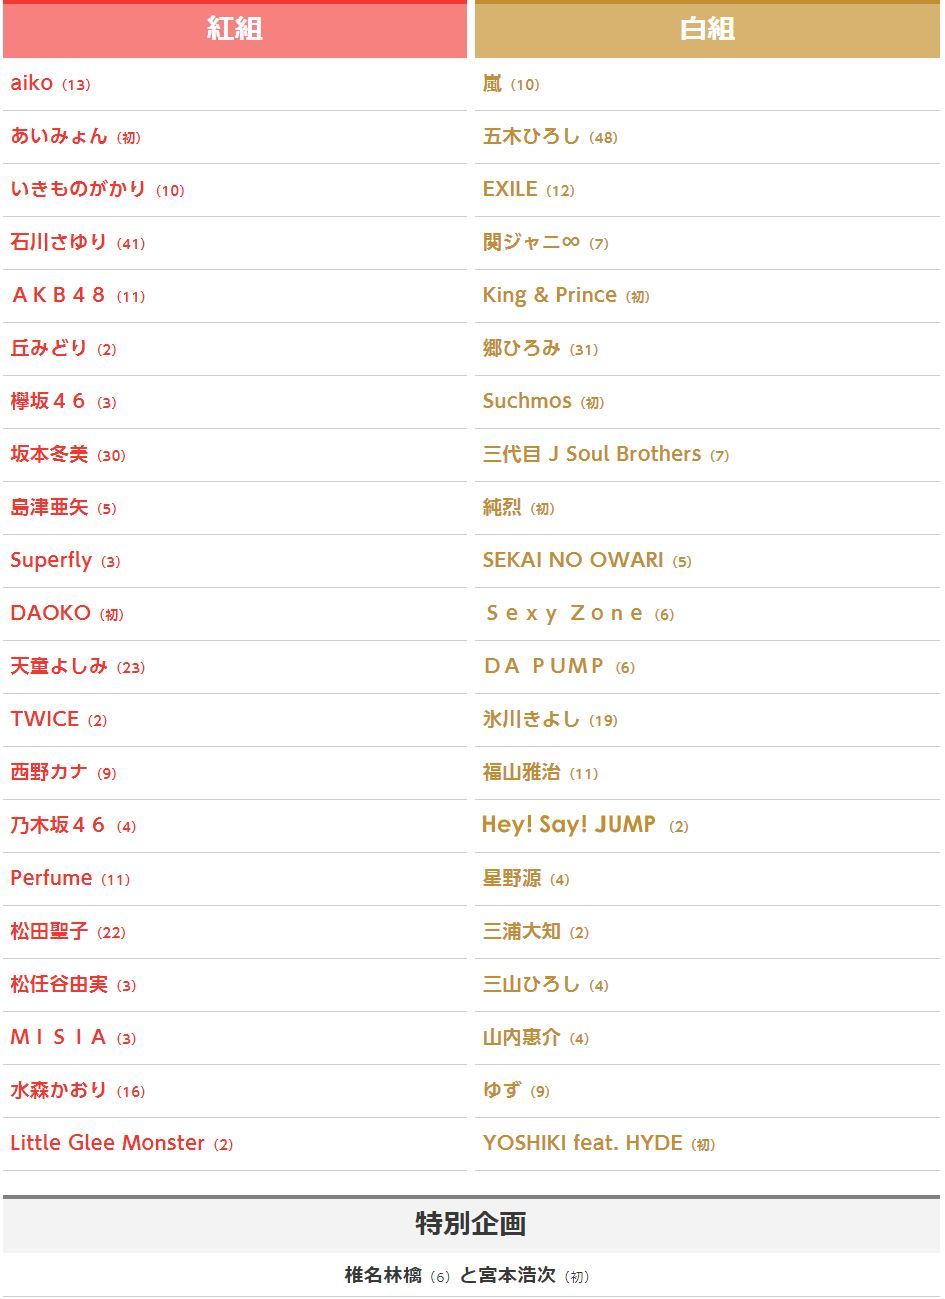 第69届NHK红白歌会出场歌手名单公布